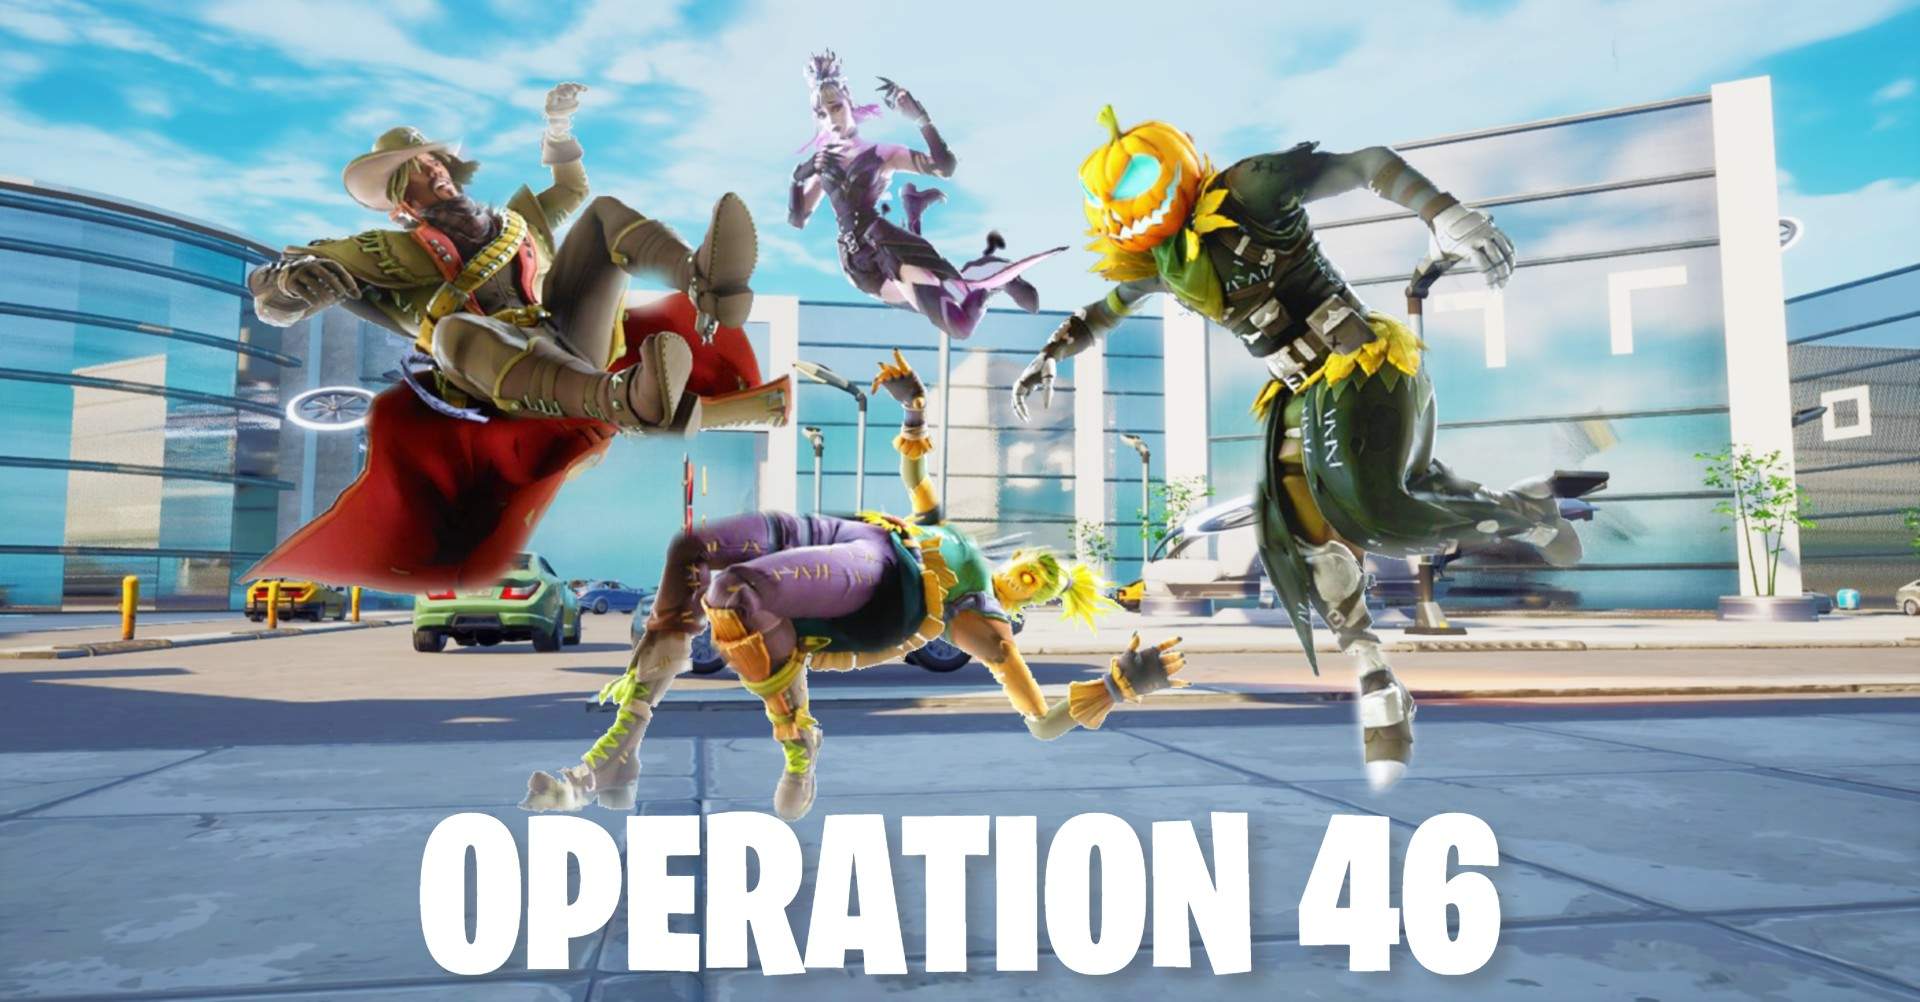 "OPERATION 46" image 2